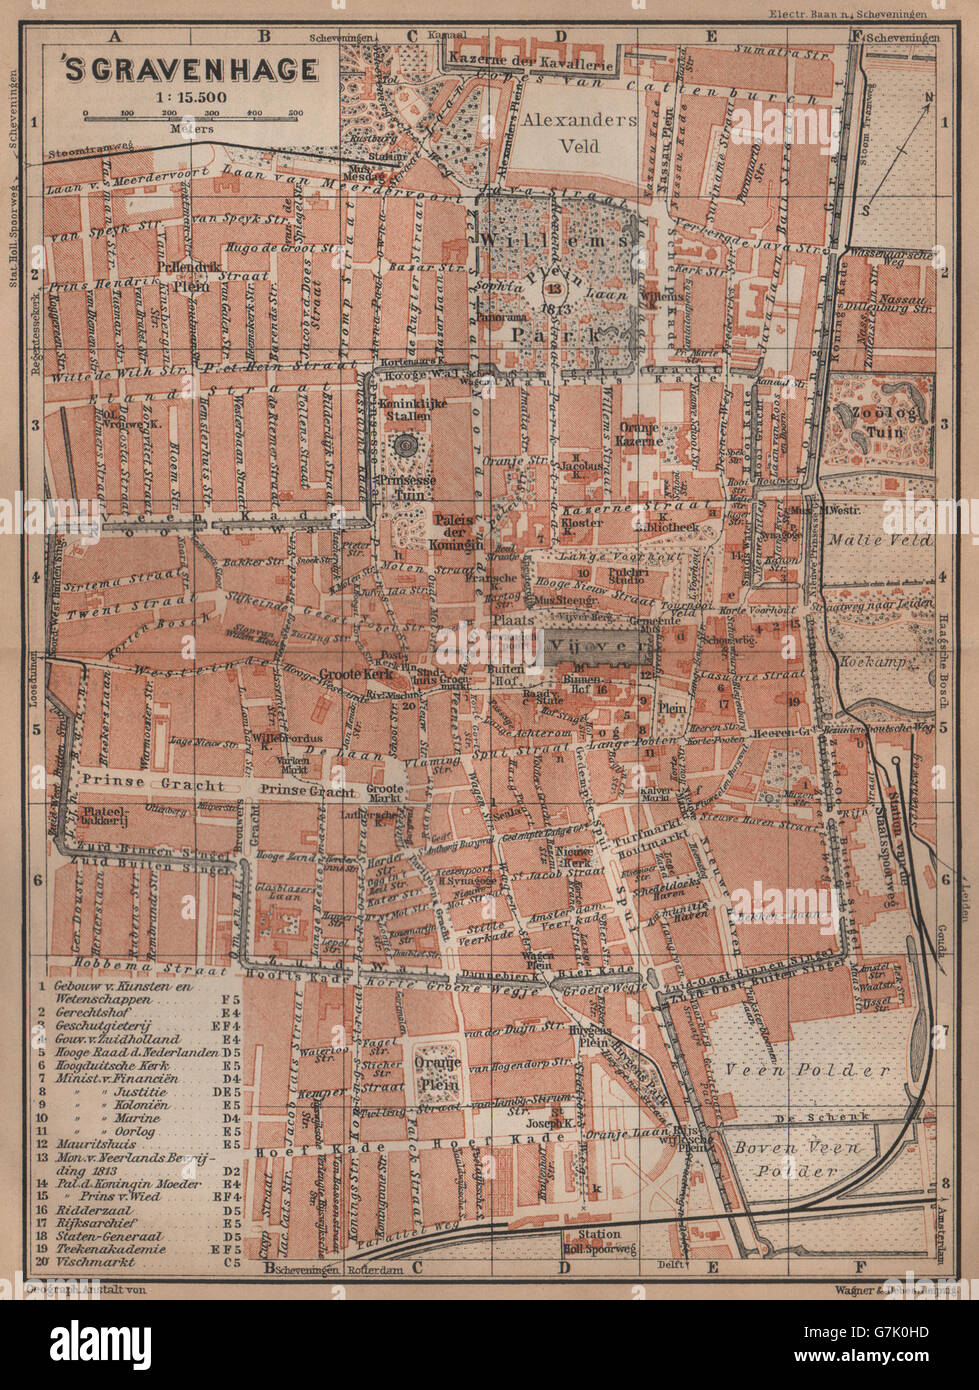 La Haya DEN HAAG 's-Gravenhage stadsplan ciudad. Países Bajos, 1905 mapa Foto de stock